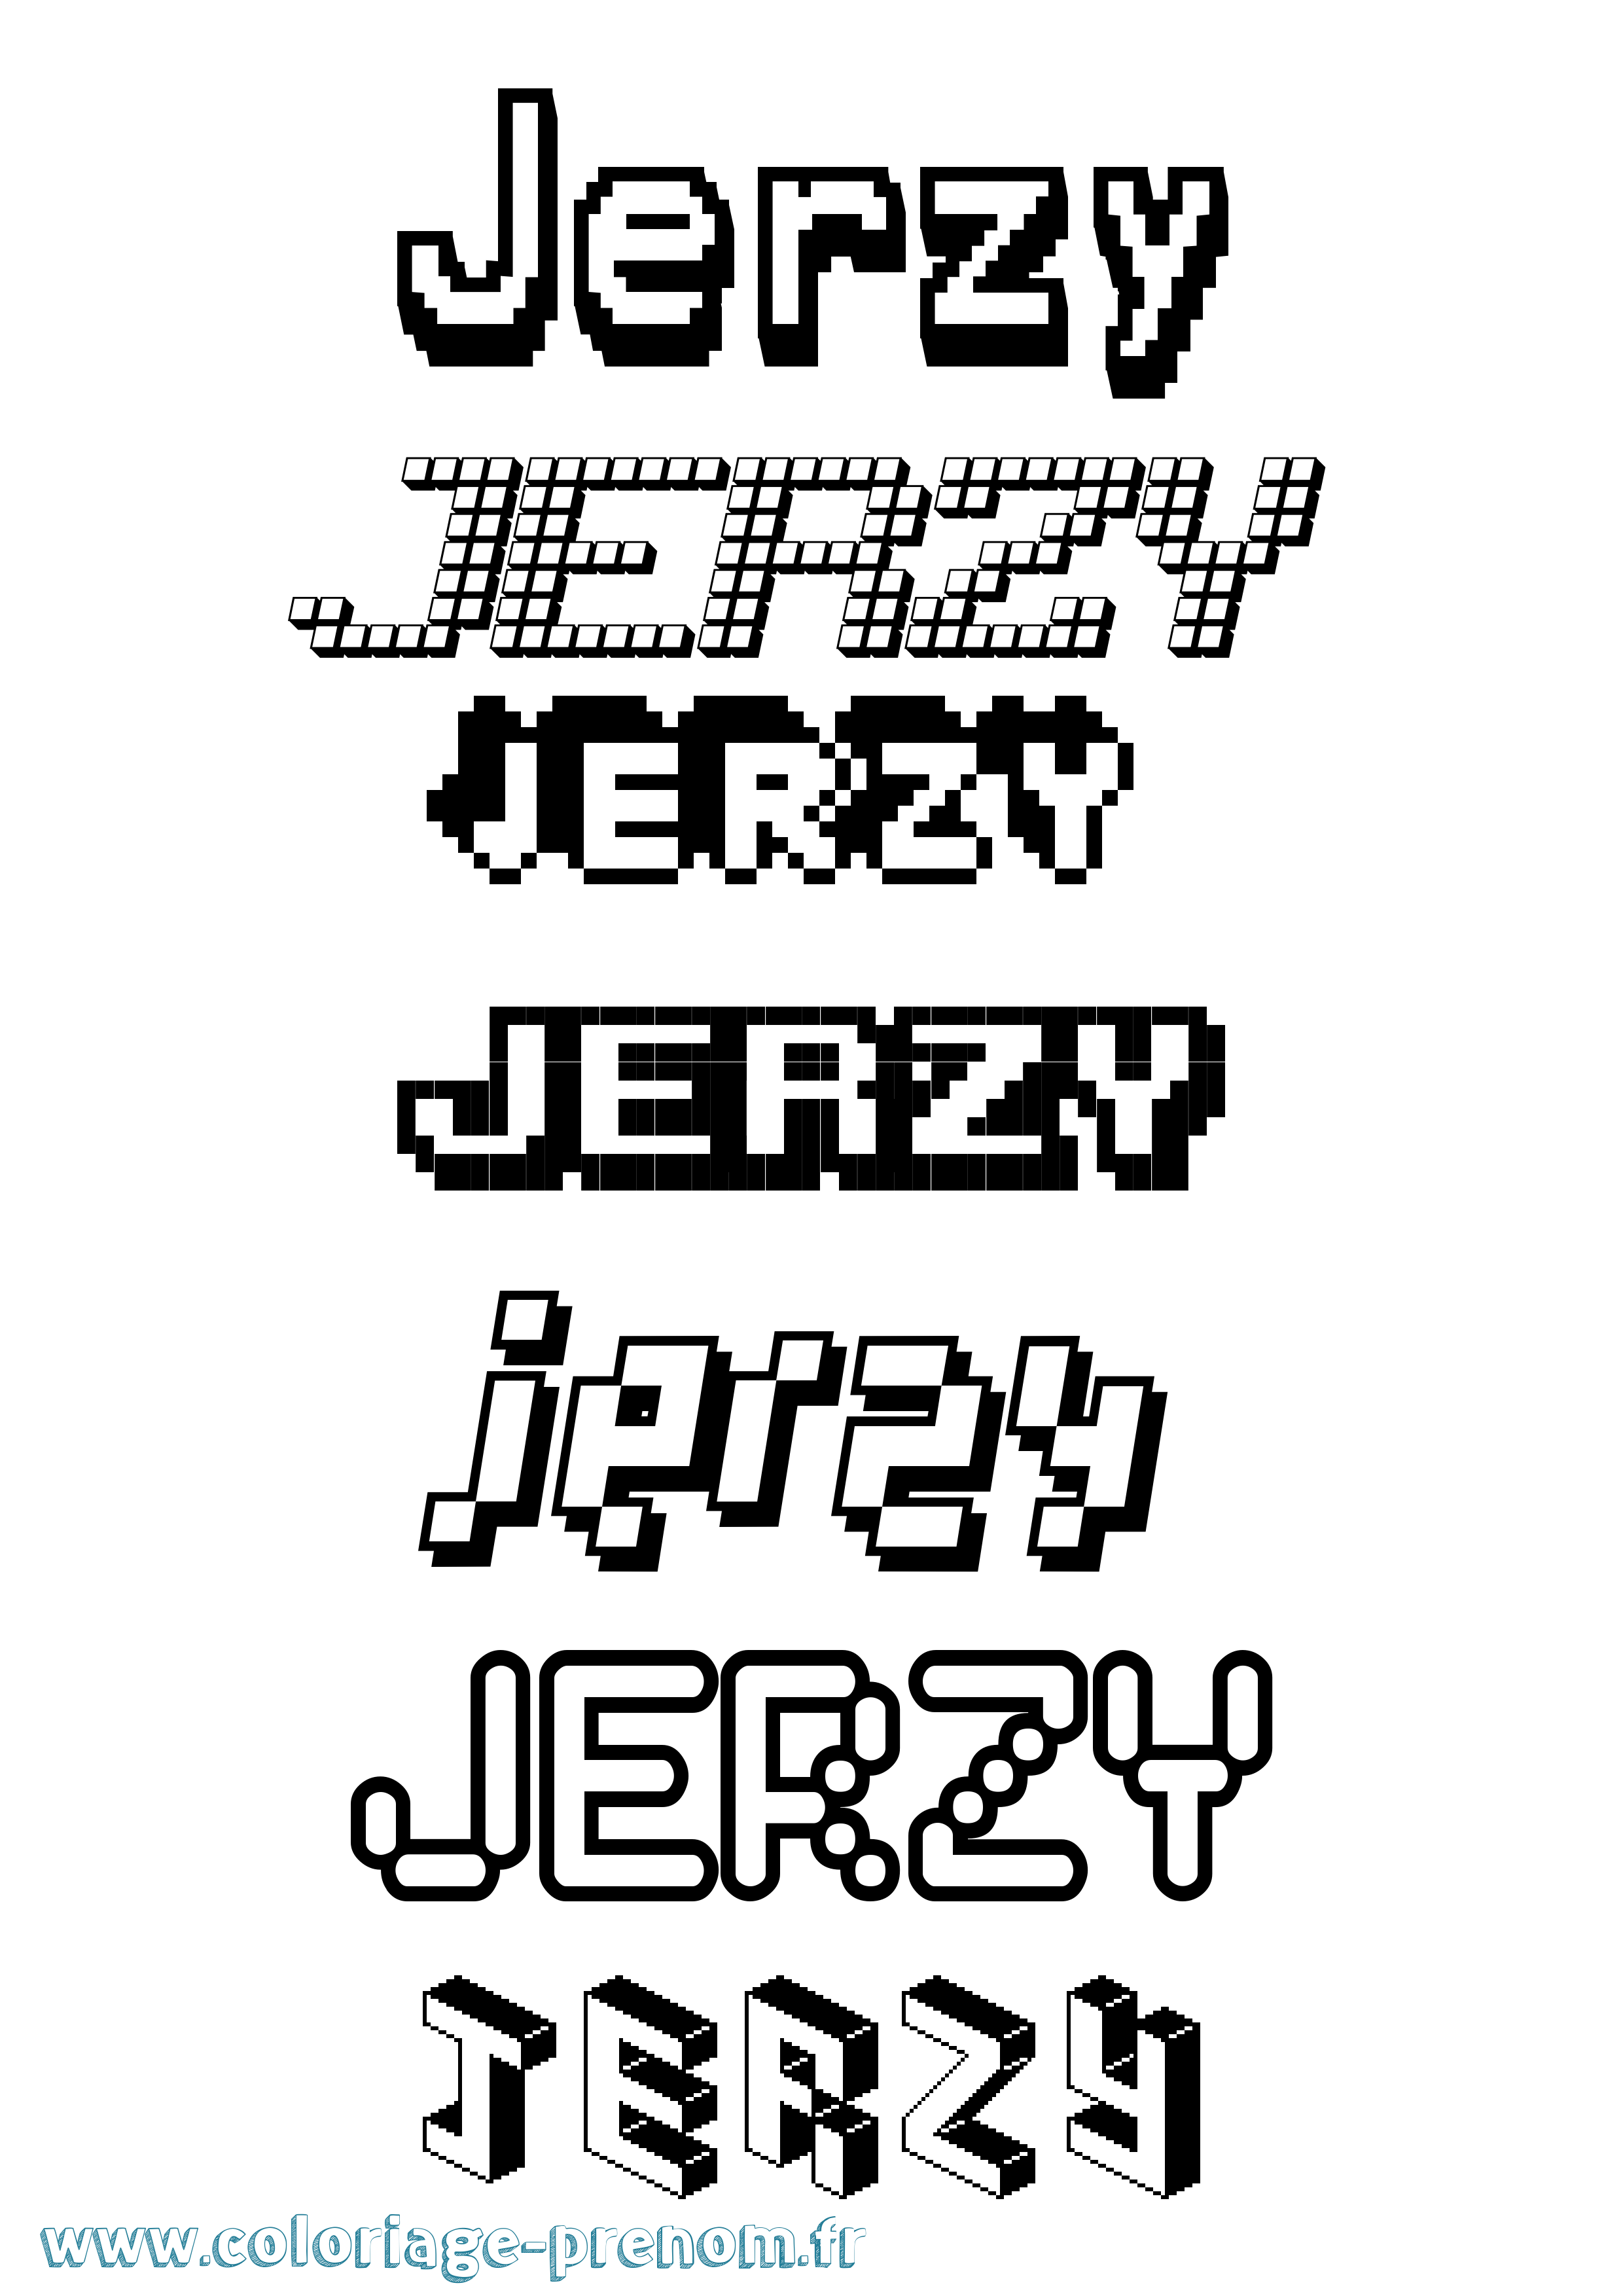 Coloriage prénom Jerzy Pixel